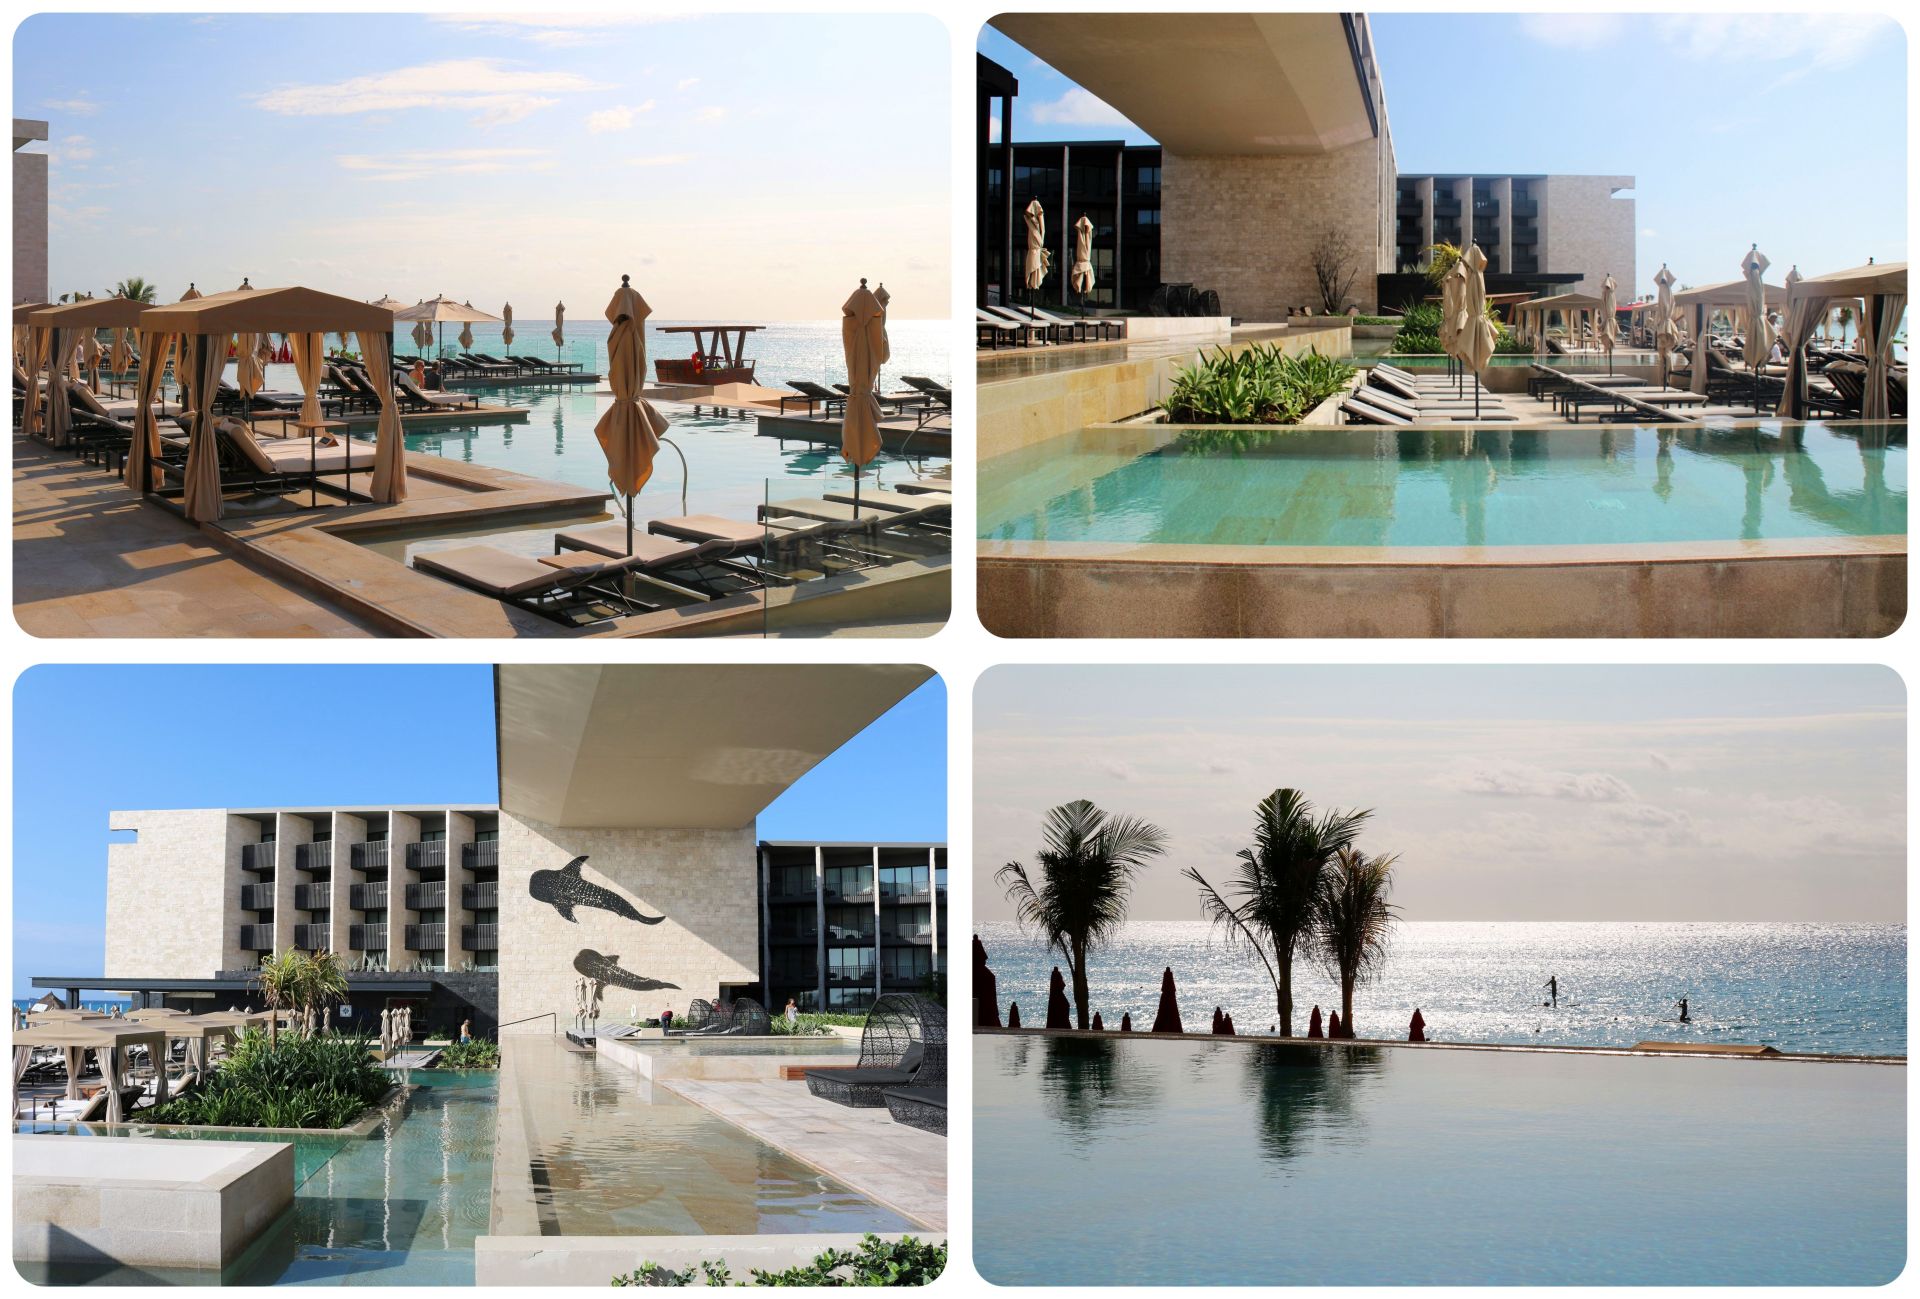 Grand Hyatt resort Playa Del Carmen pool area